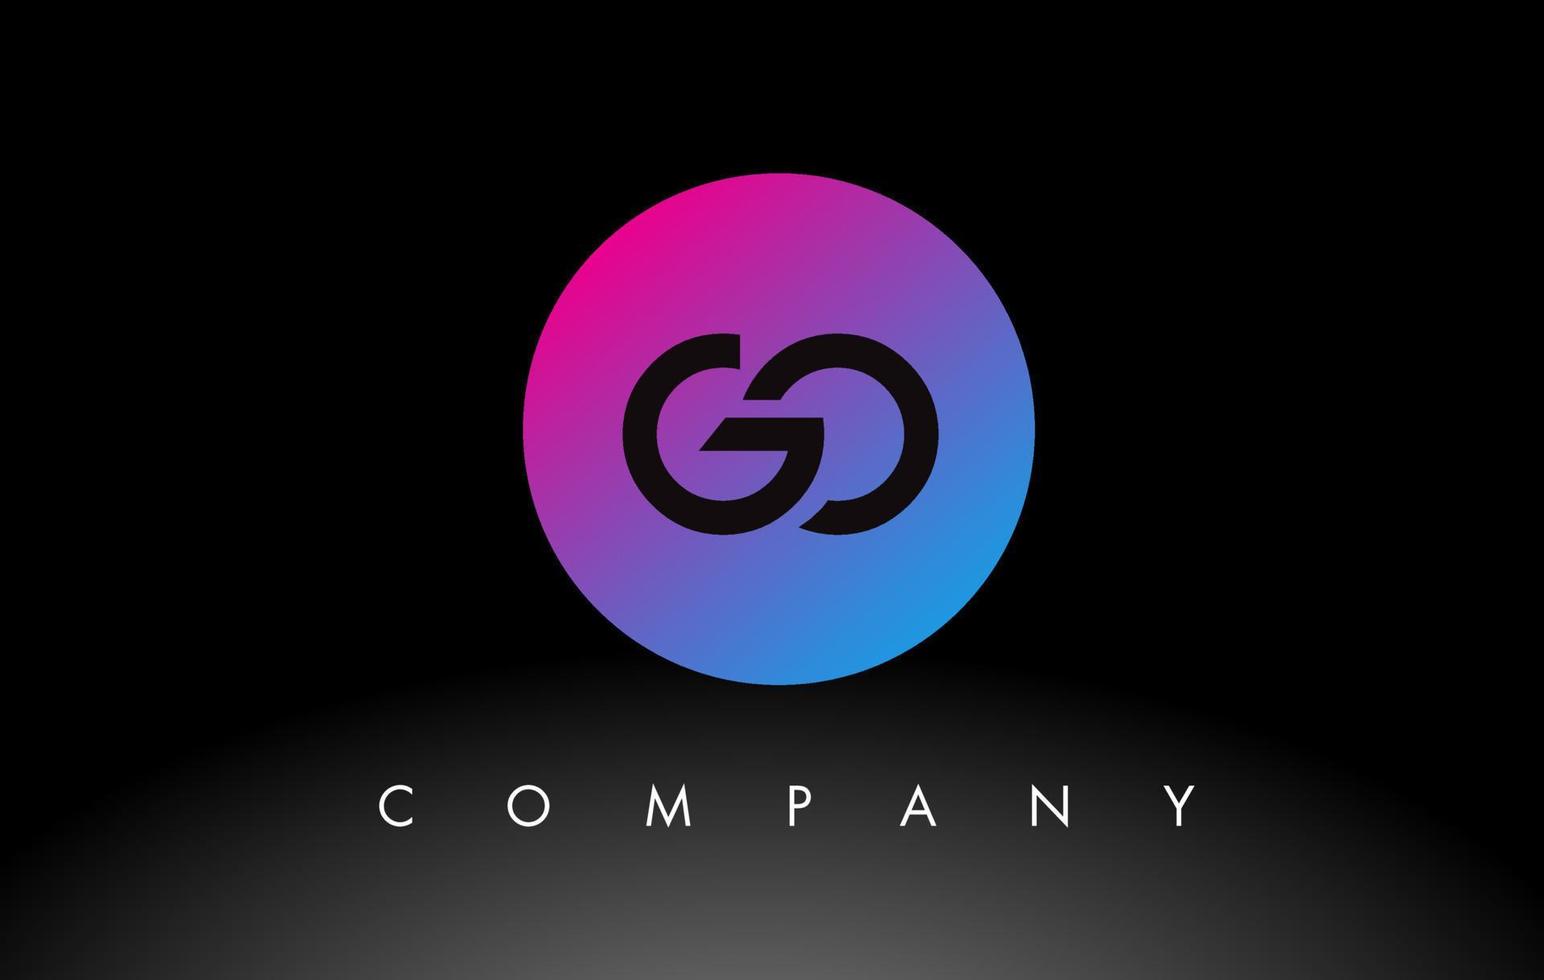 ga letter logo-ontwerppictogram met paarse neonblauwe kleuren en cirkelvormig ontwerp vector